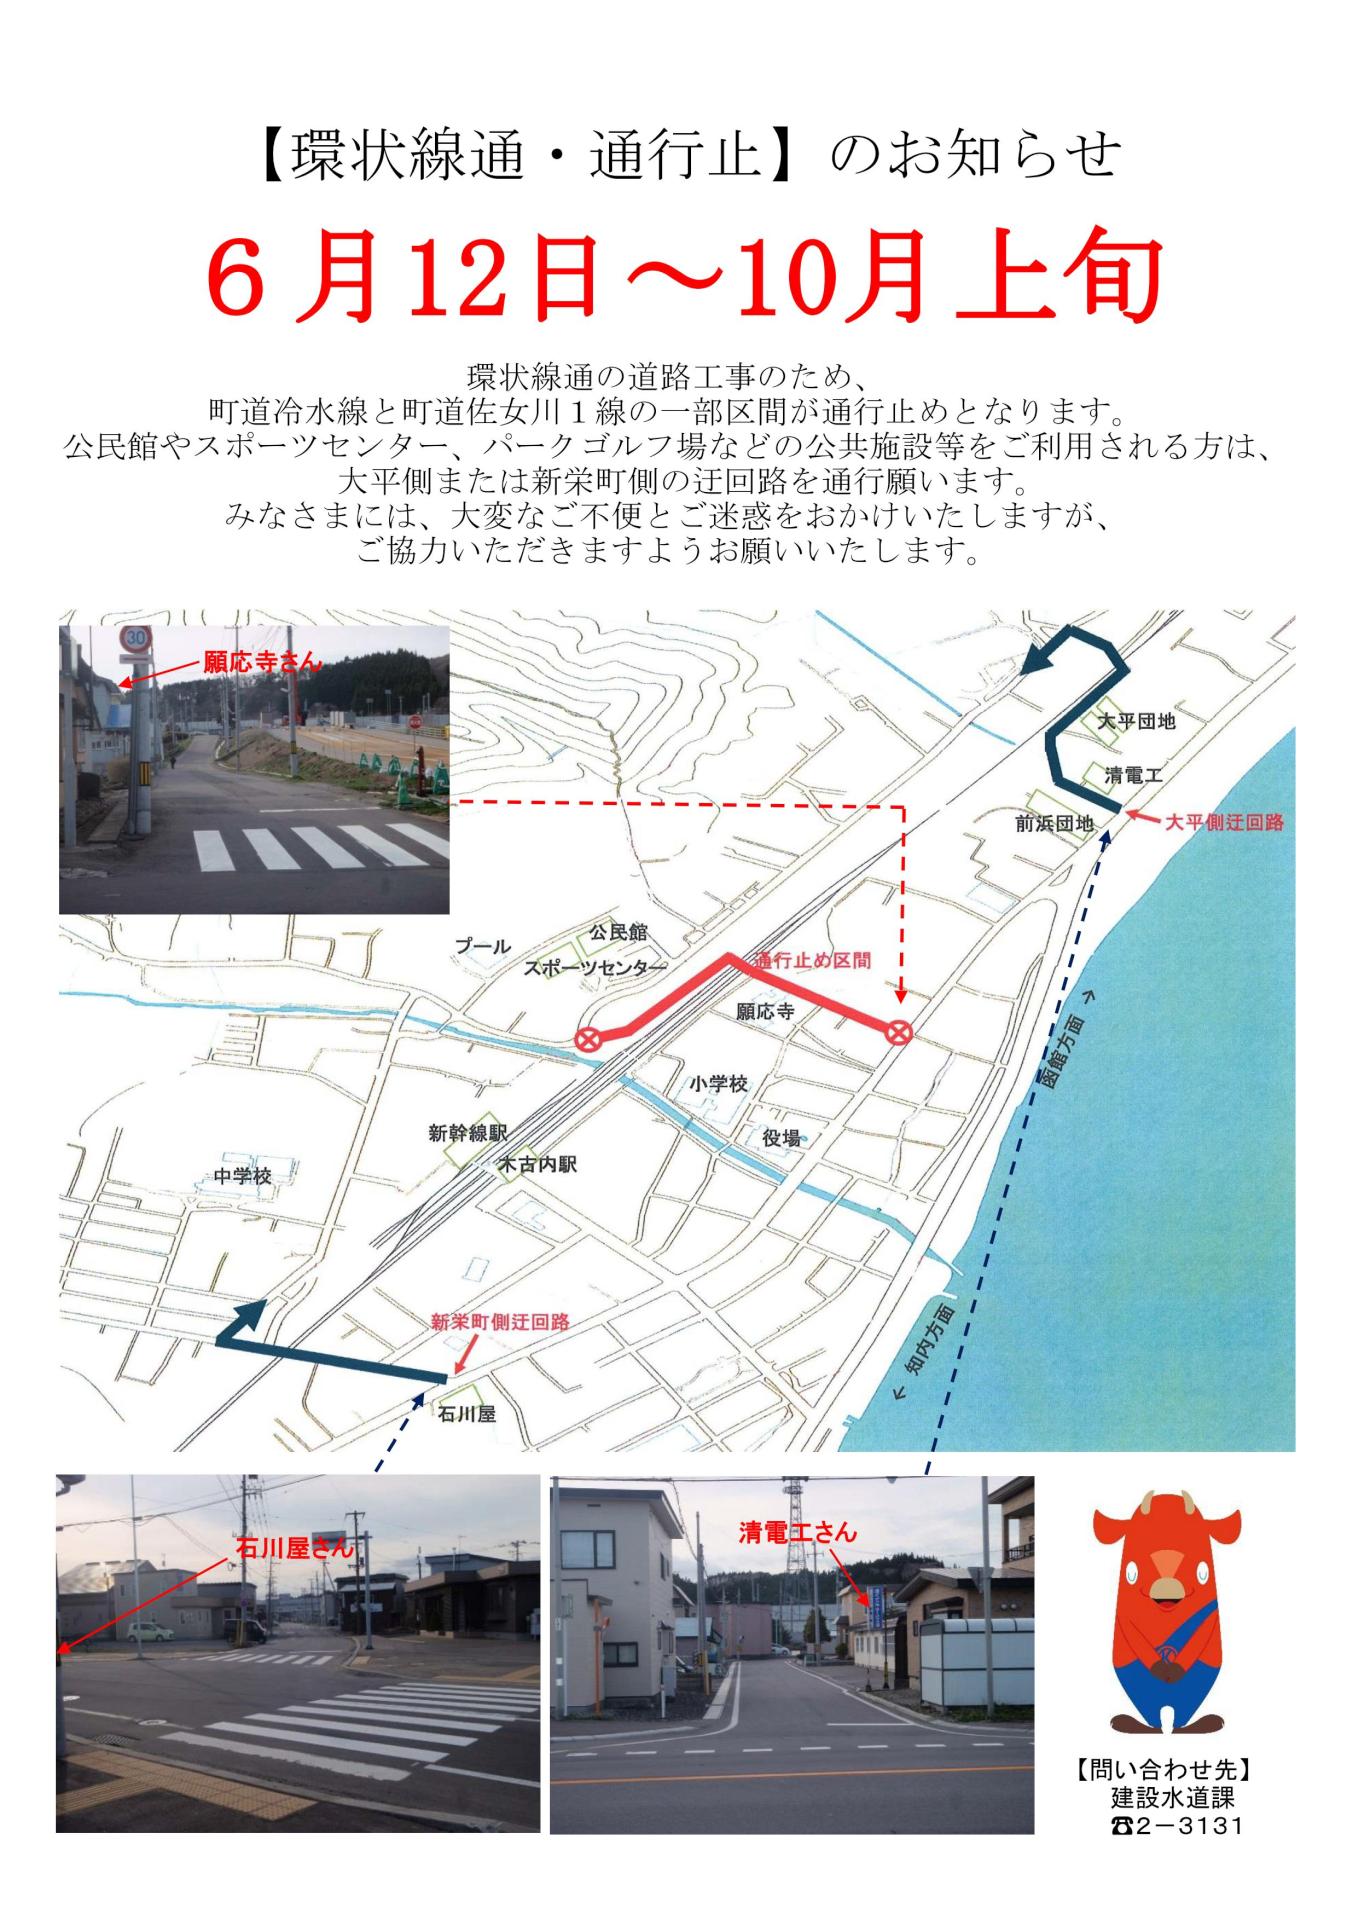 6月12日から木古内駅北口へ向かう道路が工事通行止めに。迂回路をご案内します。